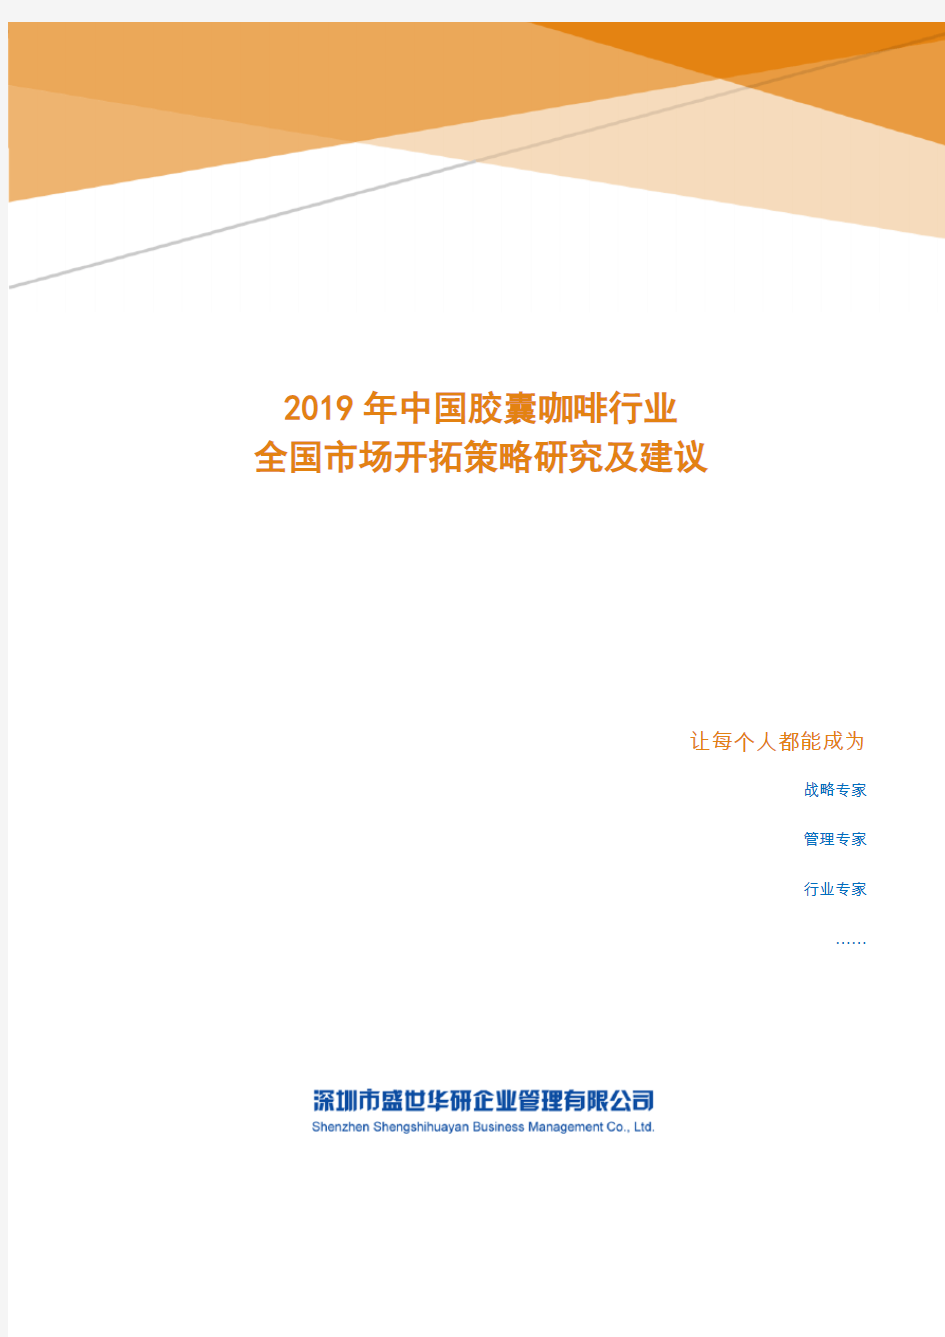 2019年中国胶囊咖啡行业全国市场开拓策略研究及建议